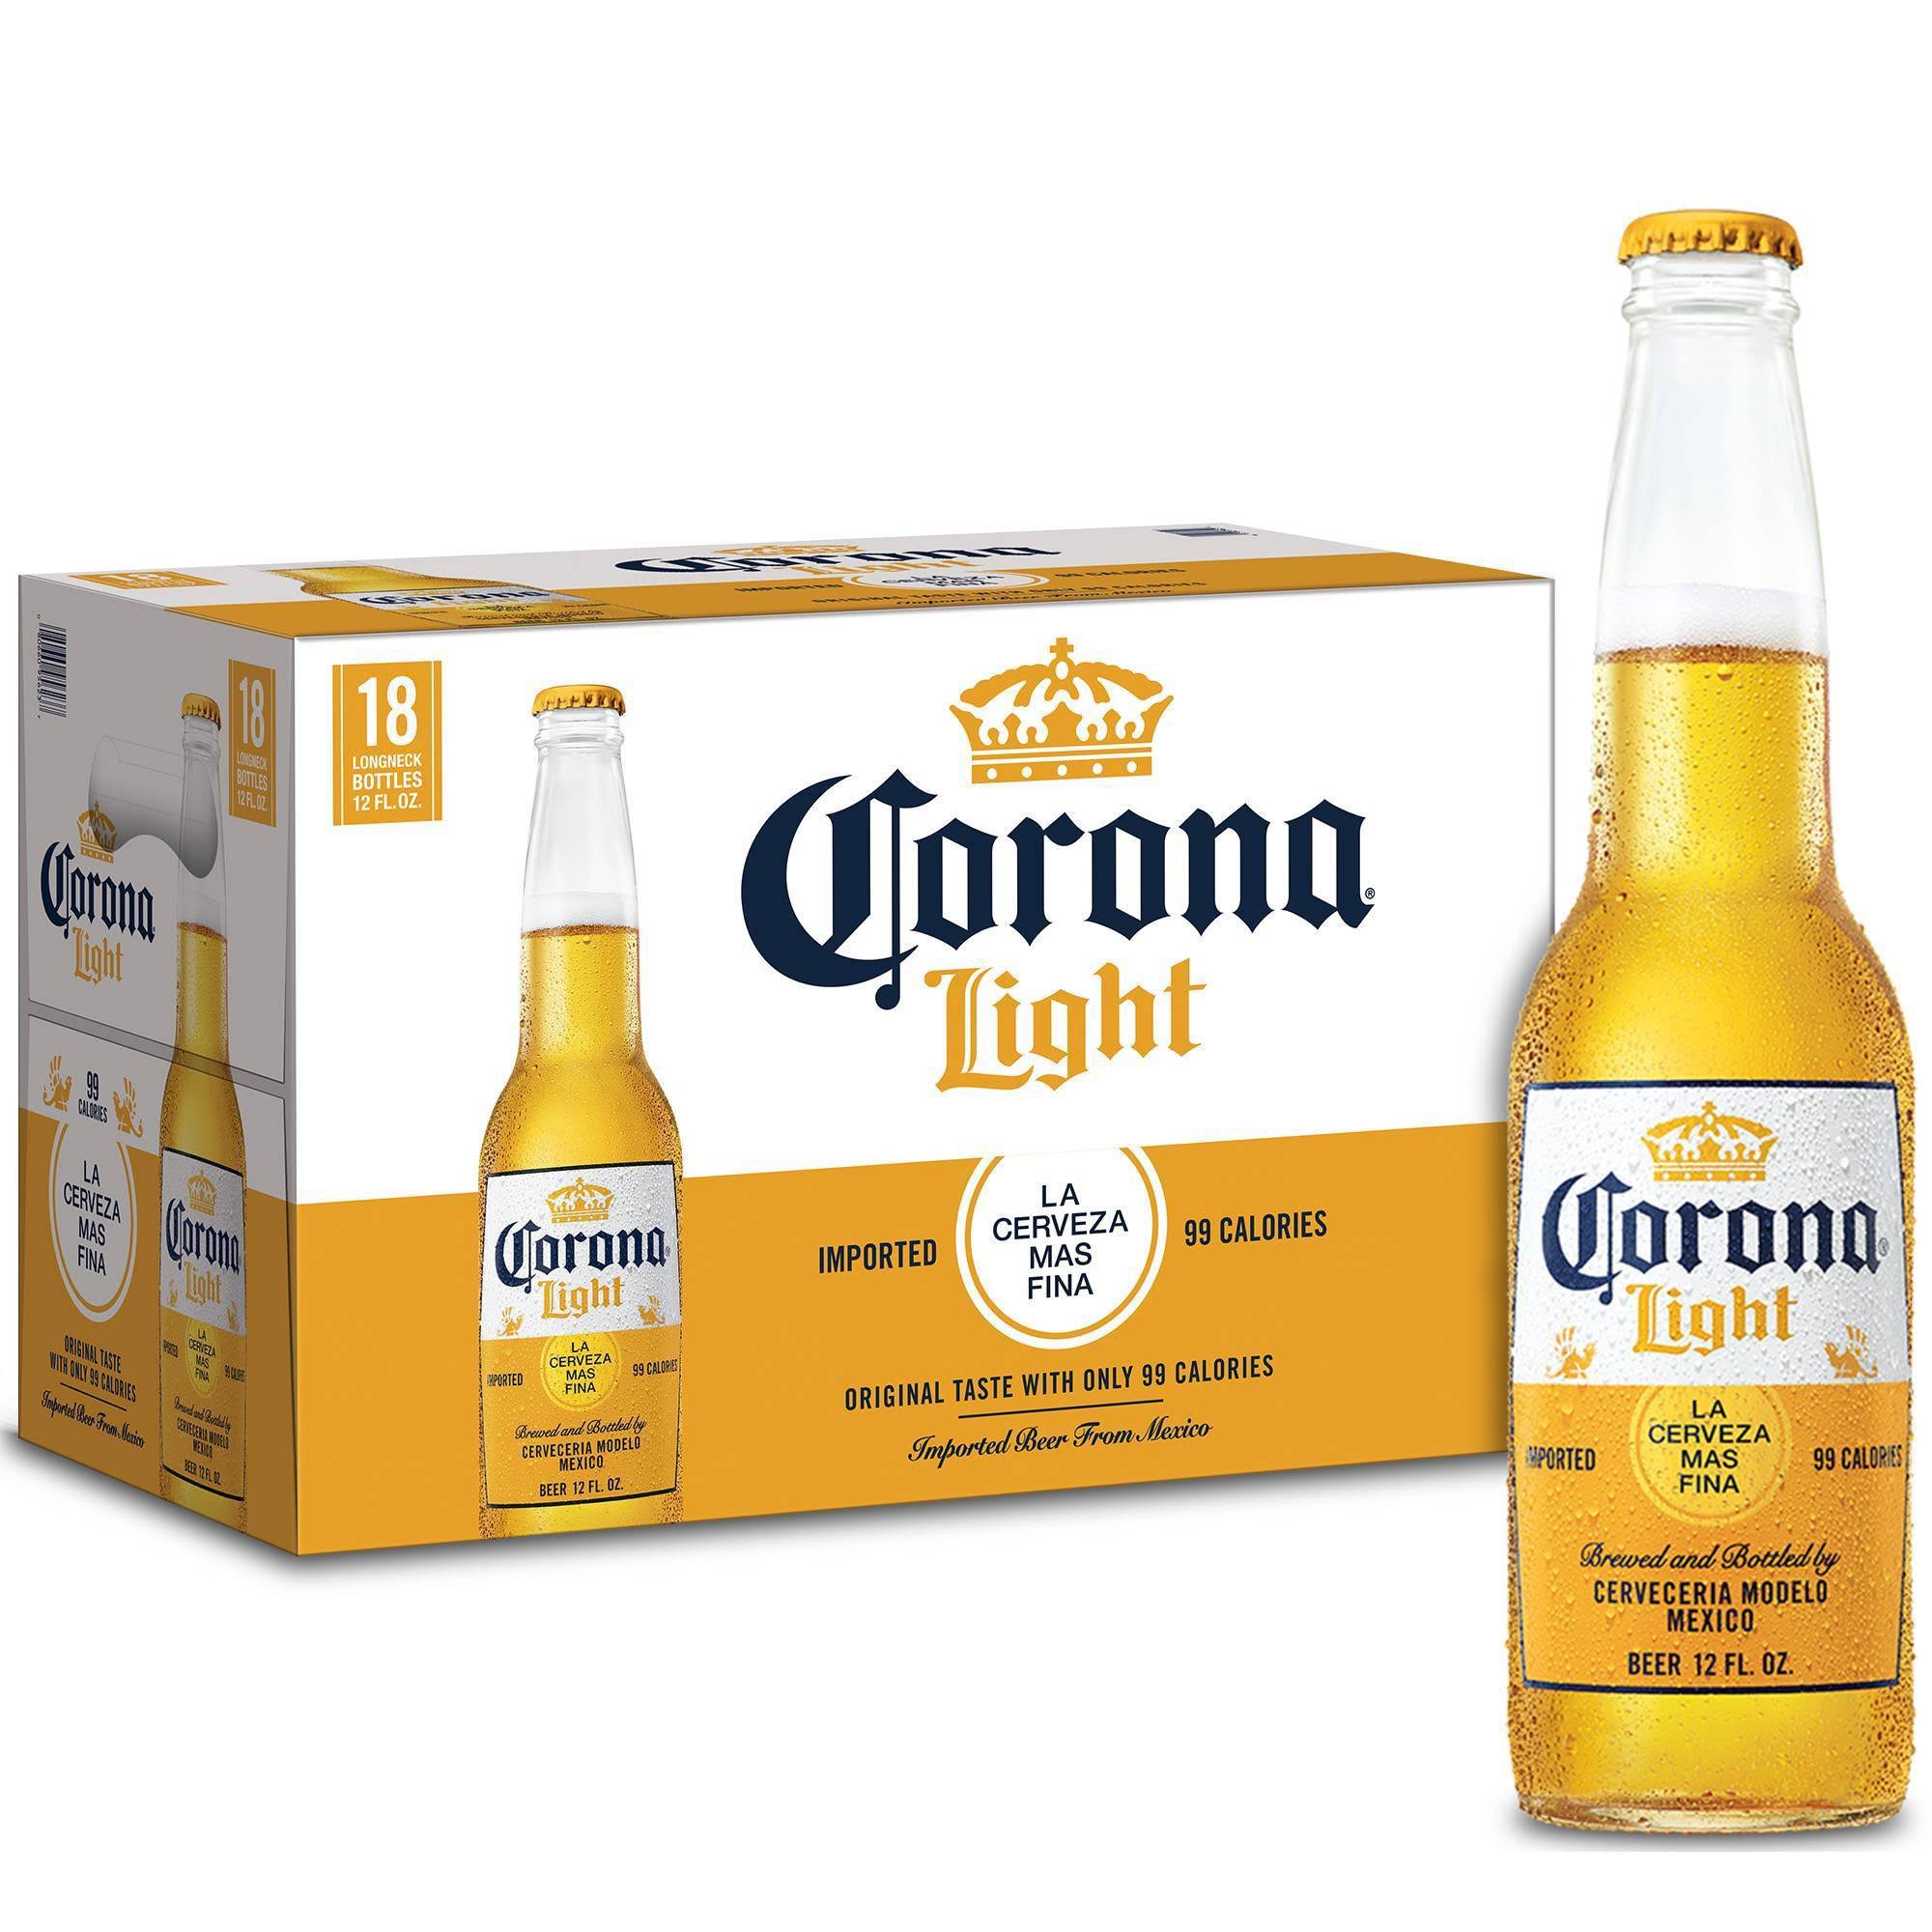 Corona Light Light Beer - 18 pack, 12 fl oz bottles